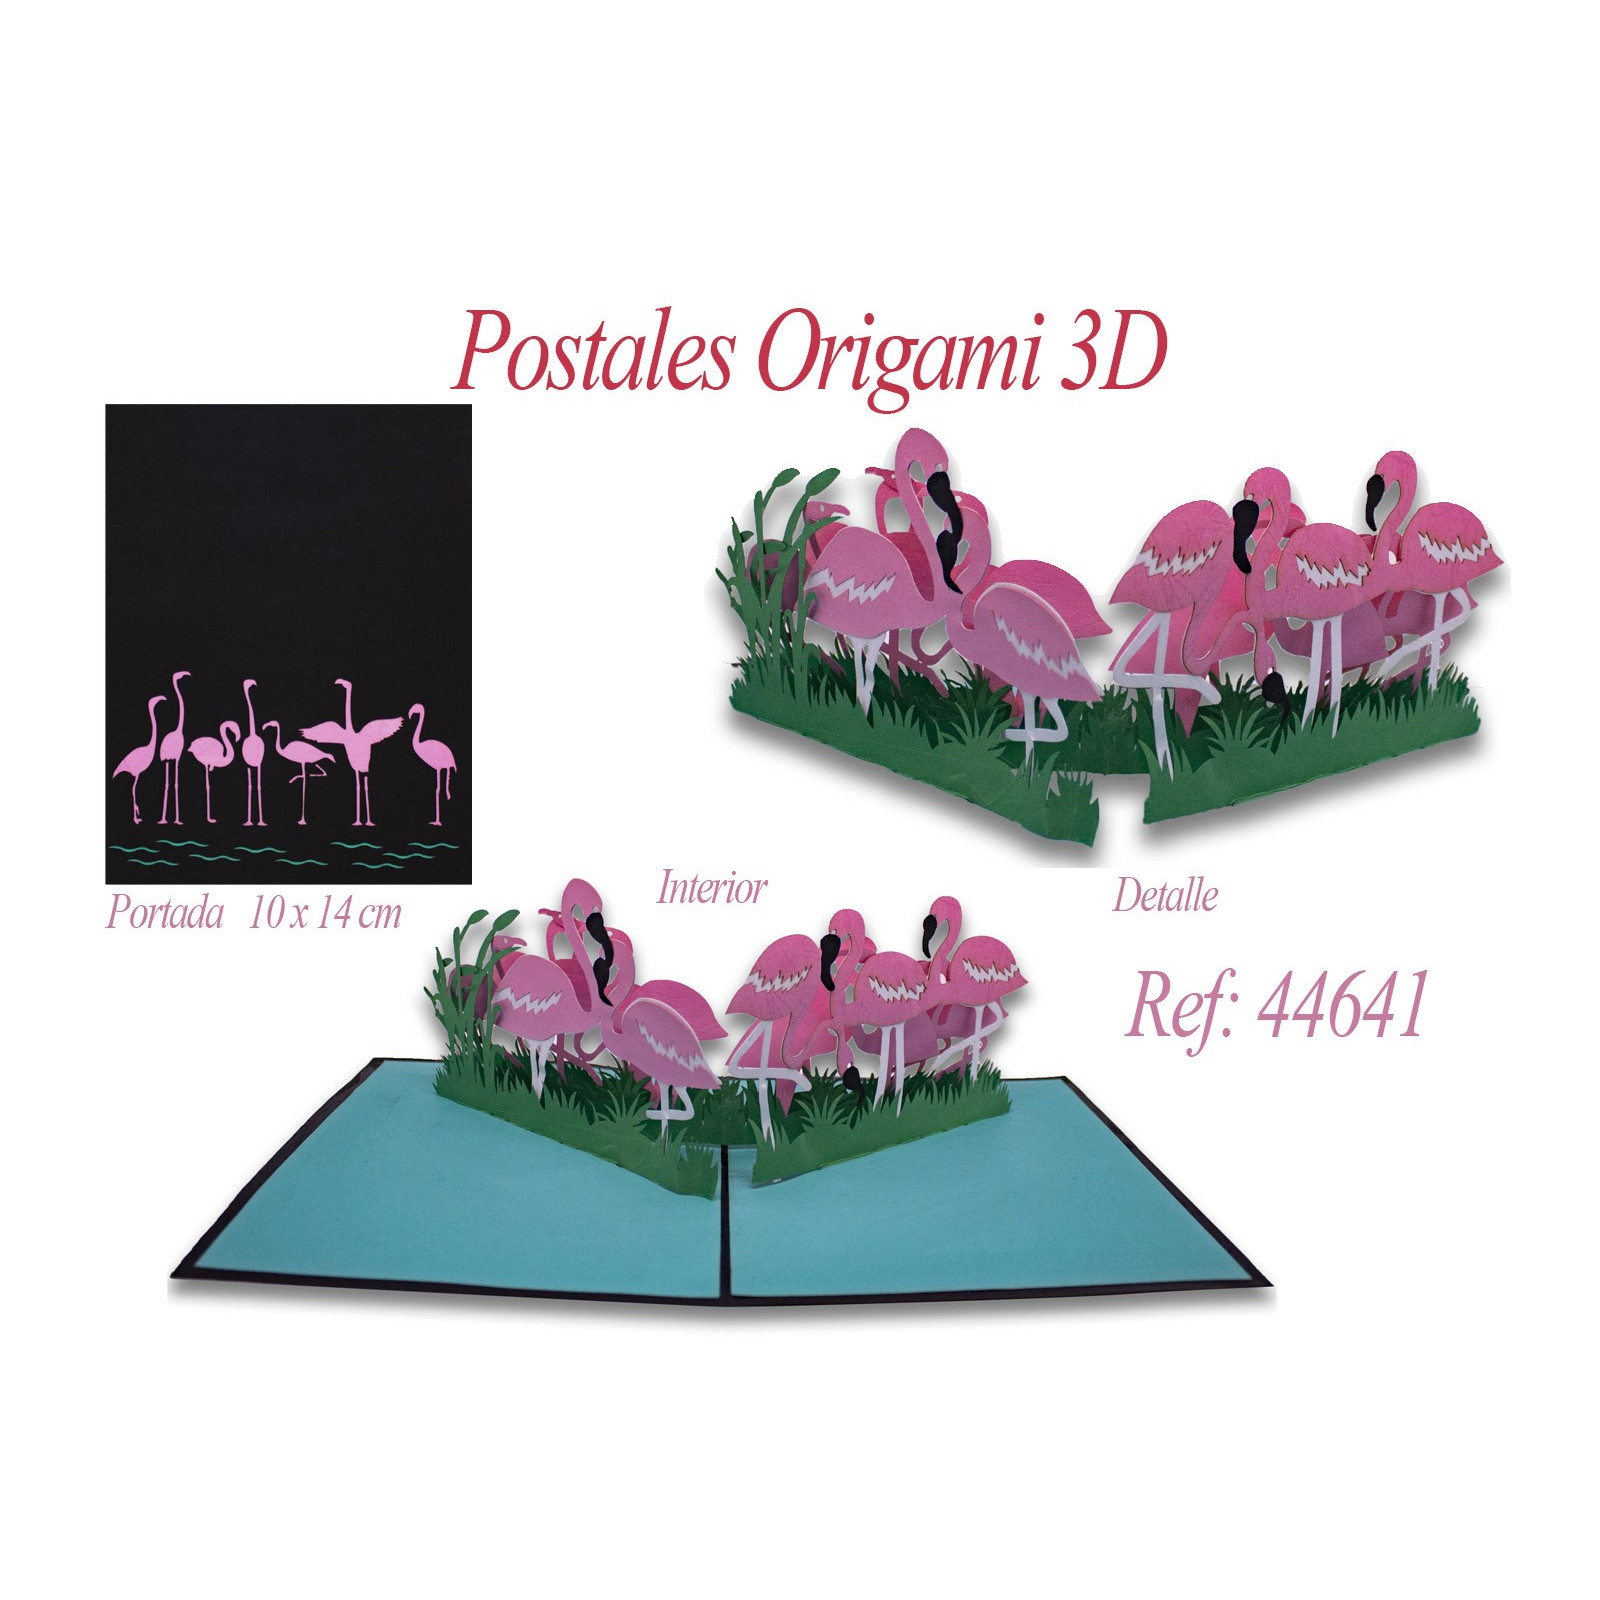 Postal 3d origami flamencos